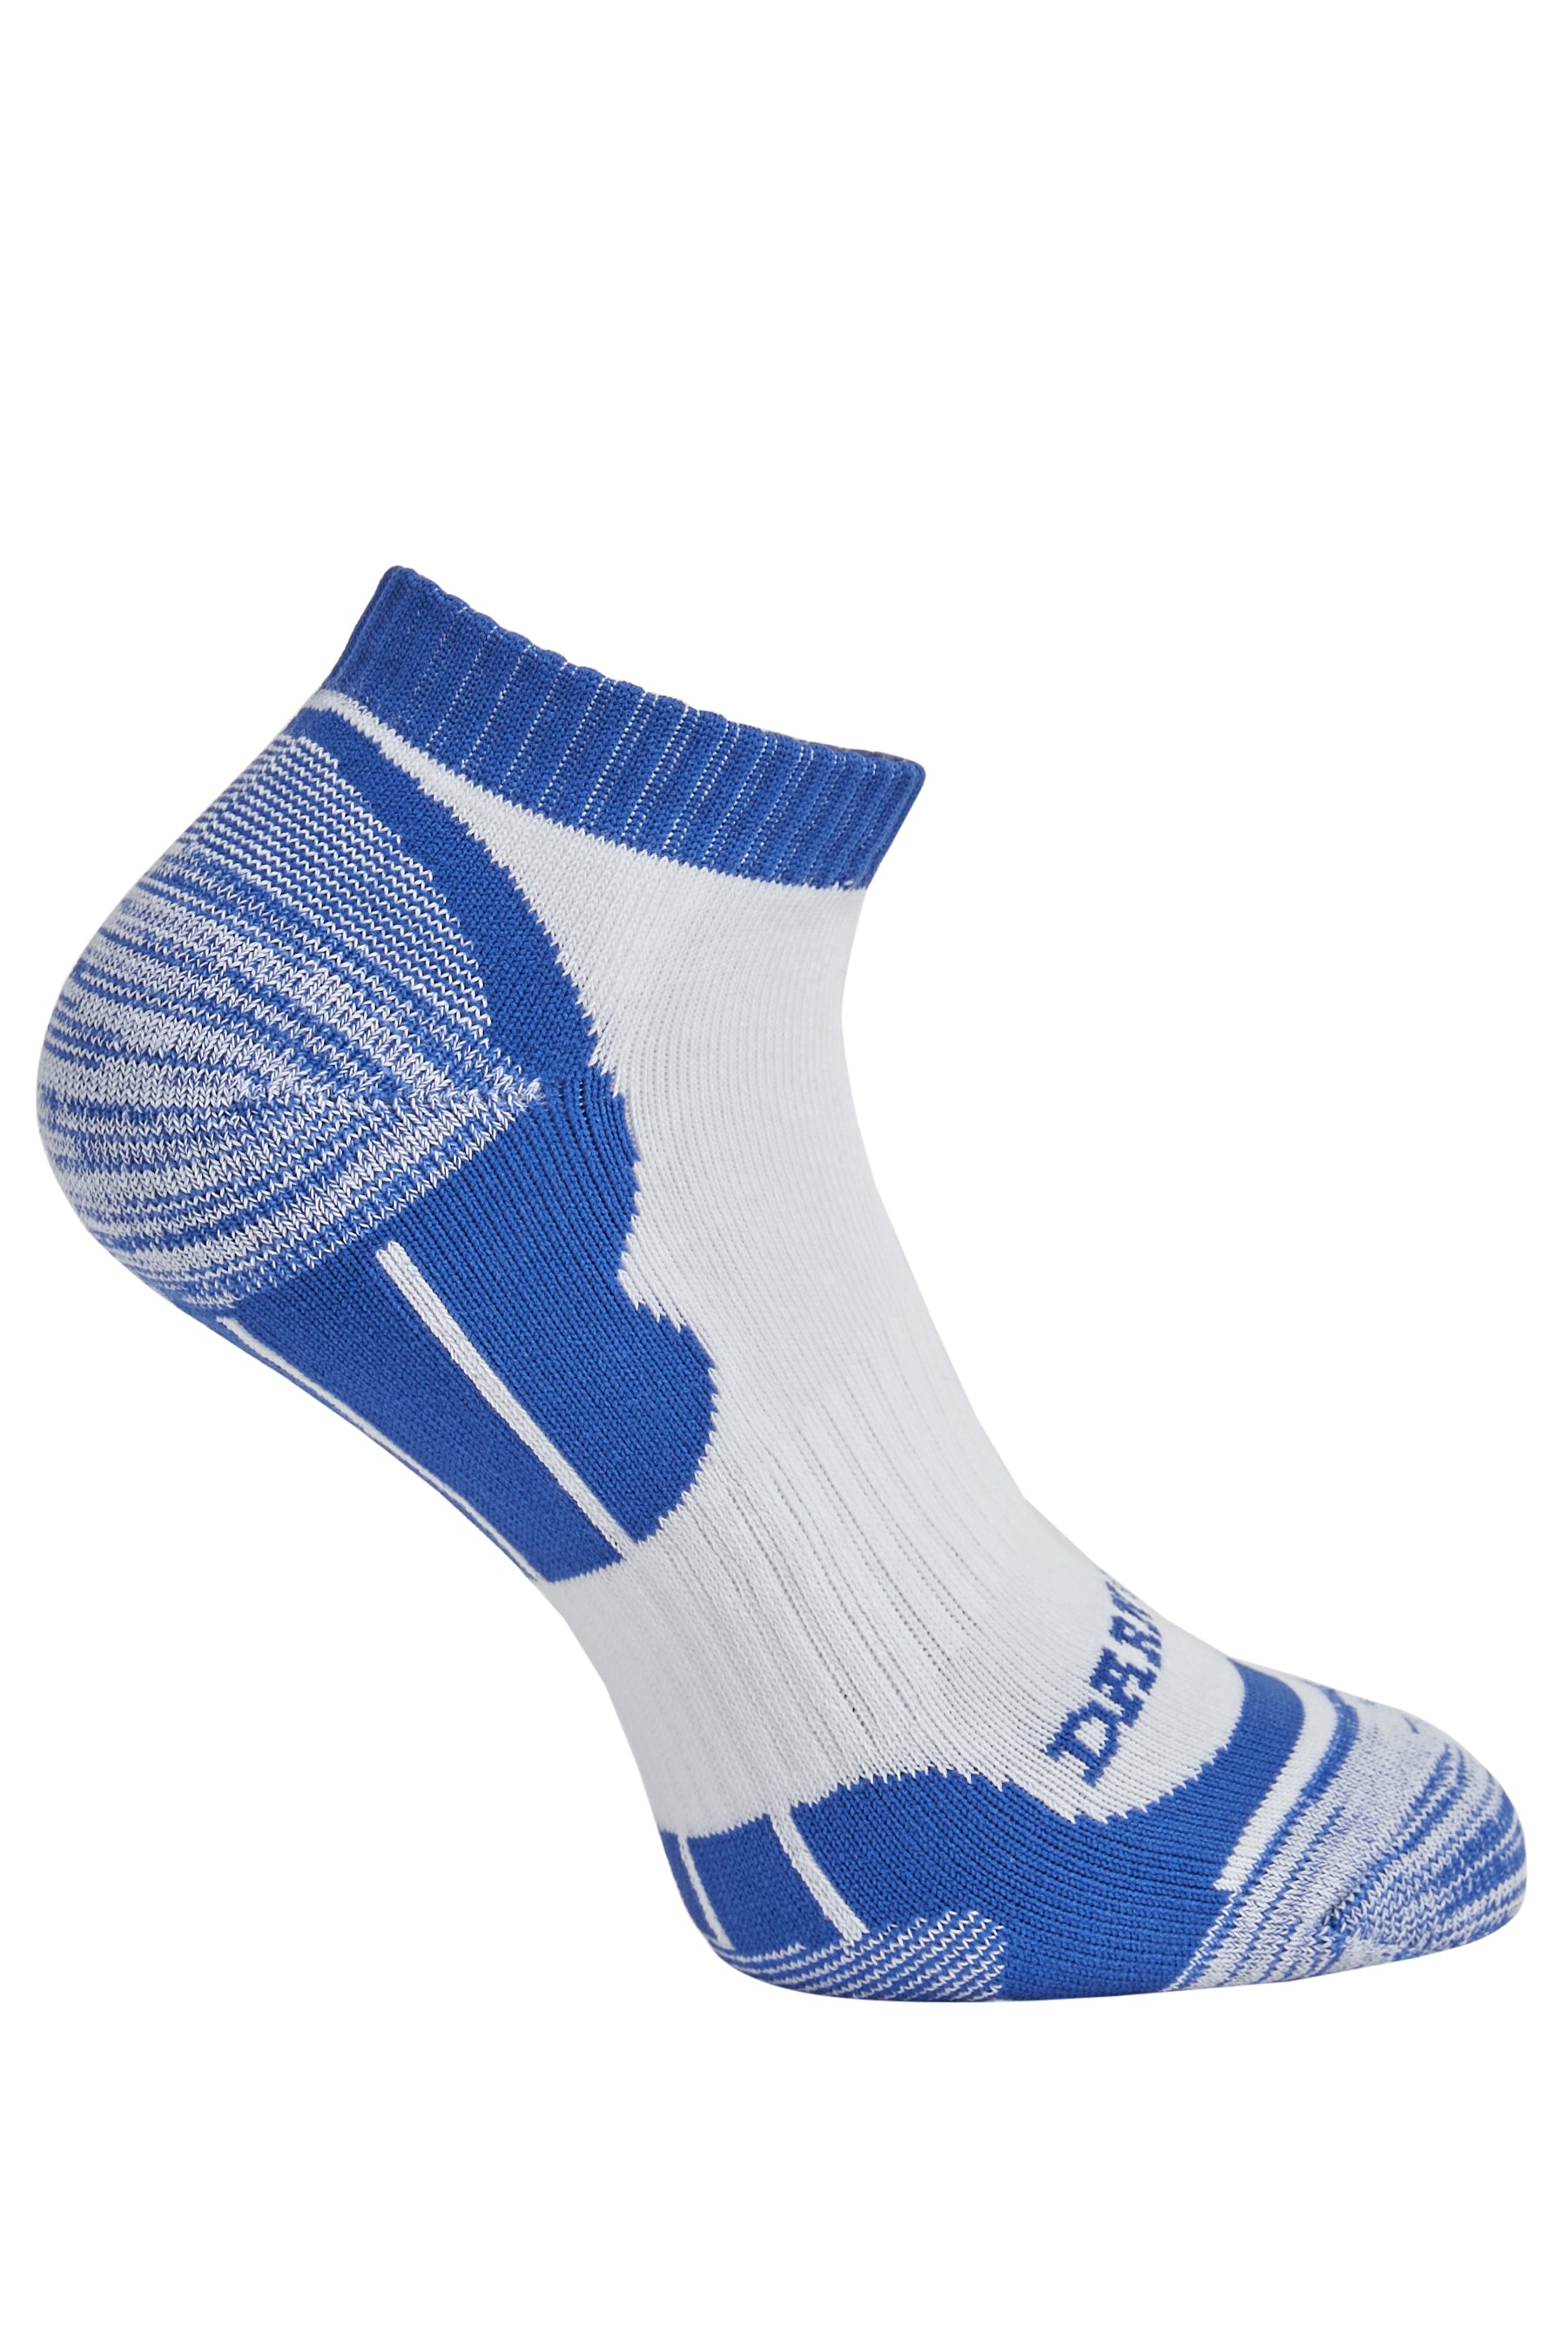 Side of Darn Tough Men's Sports Ankle Socks in Blue